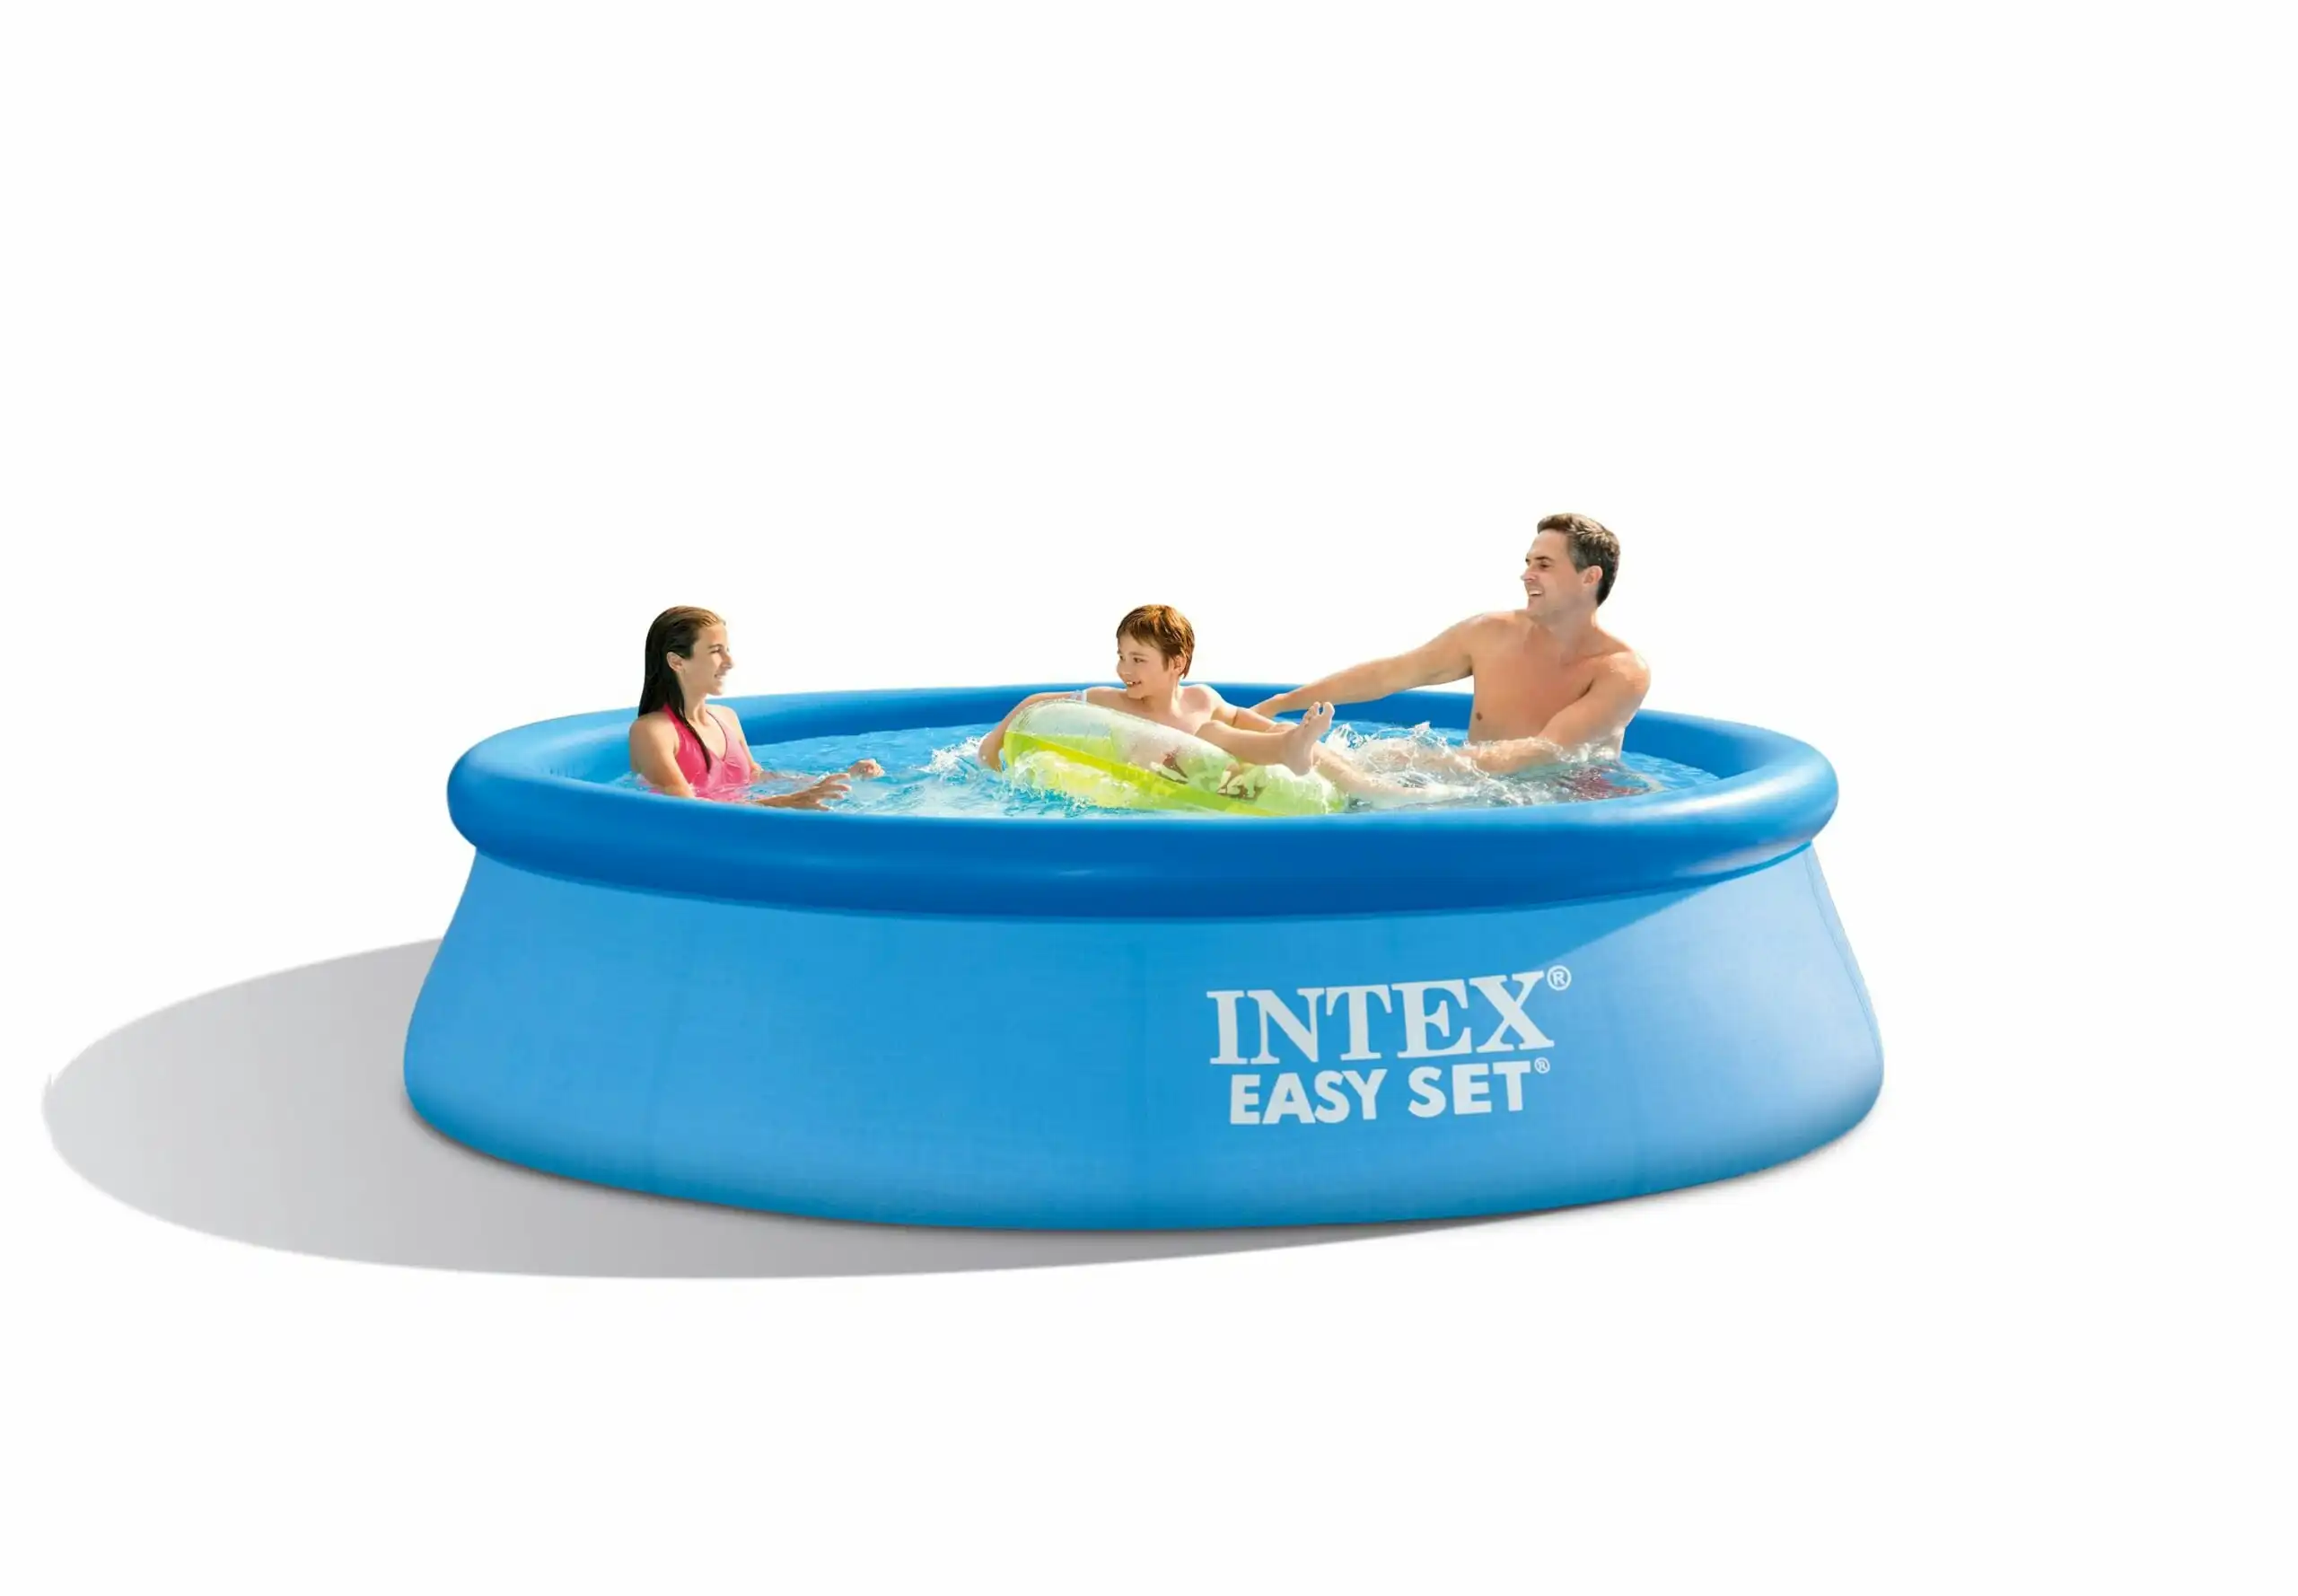 Intex Easy Set Pool Package 12' 3.66M X 76CM 28132